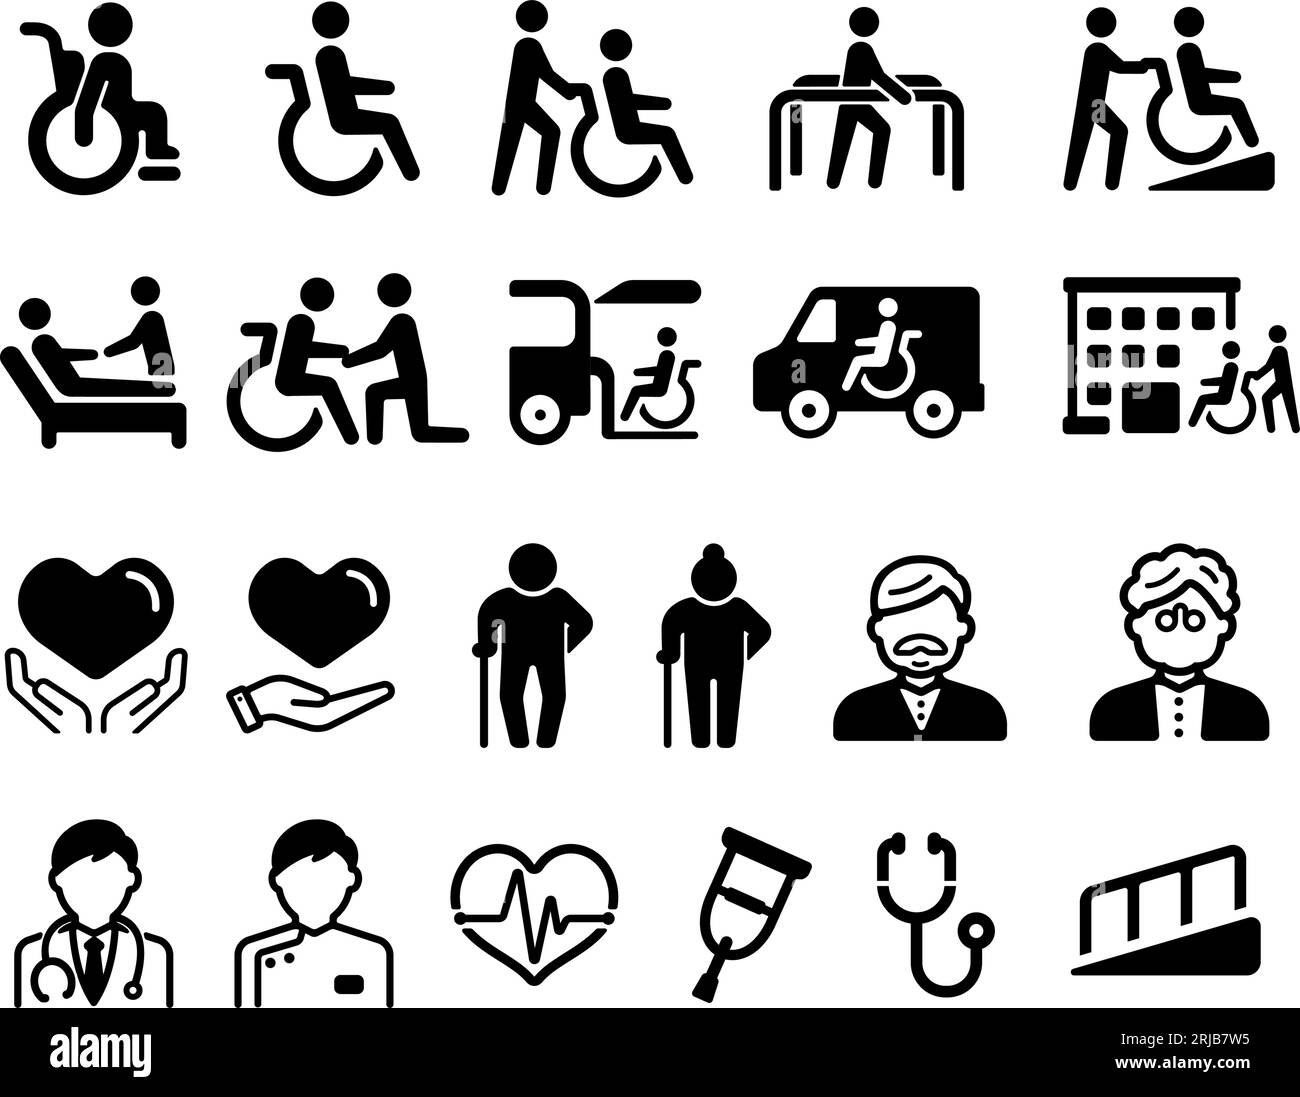 Vector icônes ensemble d'illustrations liées au bien-être pour les personnes âgées, les personnes handicapées, etc Illustration de Vecteur